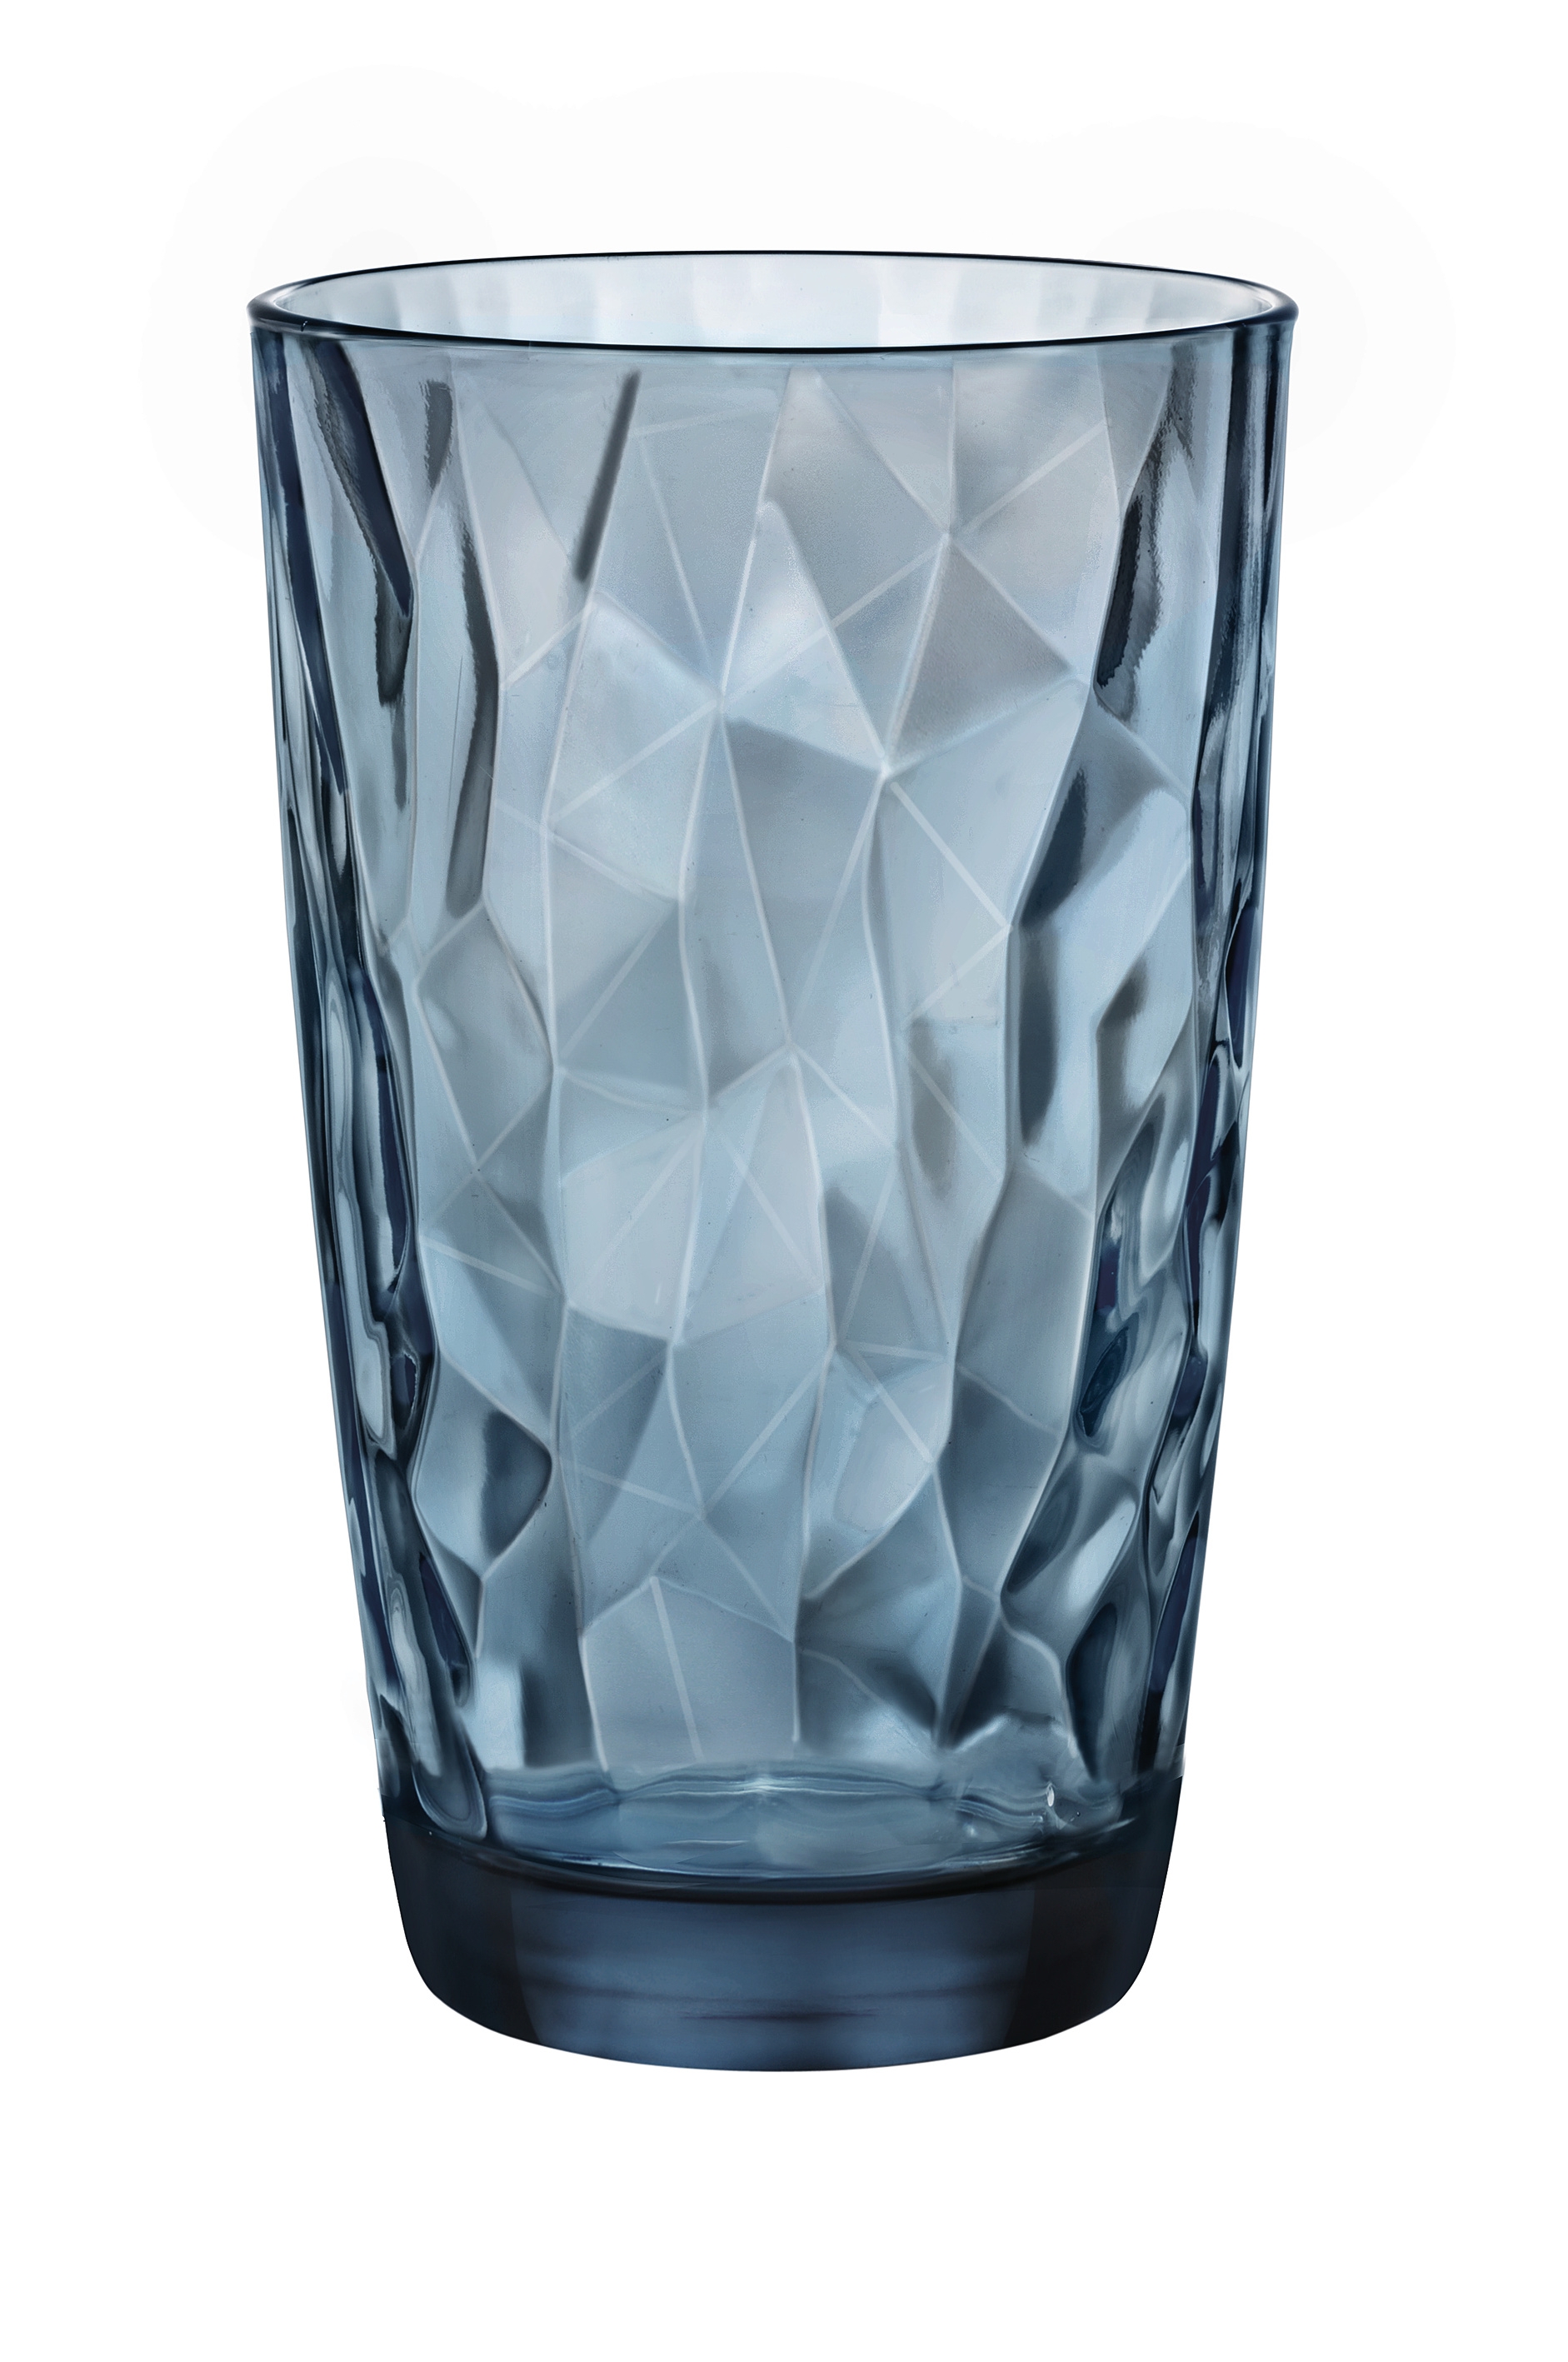 Ποτήρι Νερού Γυάλινο Diamond Μπλε Bormioli Rocco 470ml BR00127701 (Σετ 6 Τεμάχια) (Υλικό: Γυαλί, Χρώμα: Μπλε, Μέγεθος: Σωλήνας) - Bormioli Rocco - BR00127701 177274